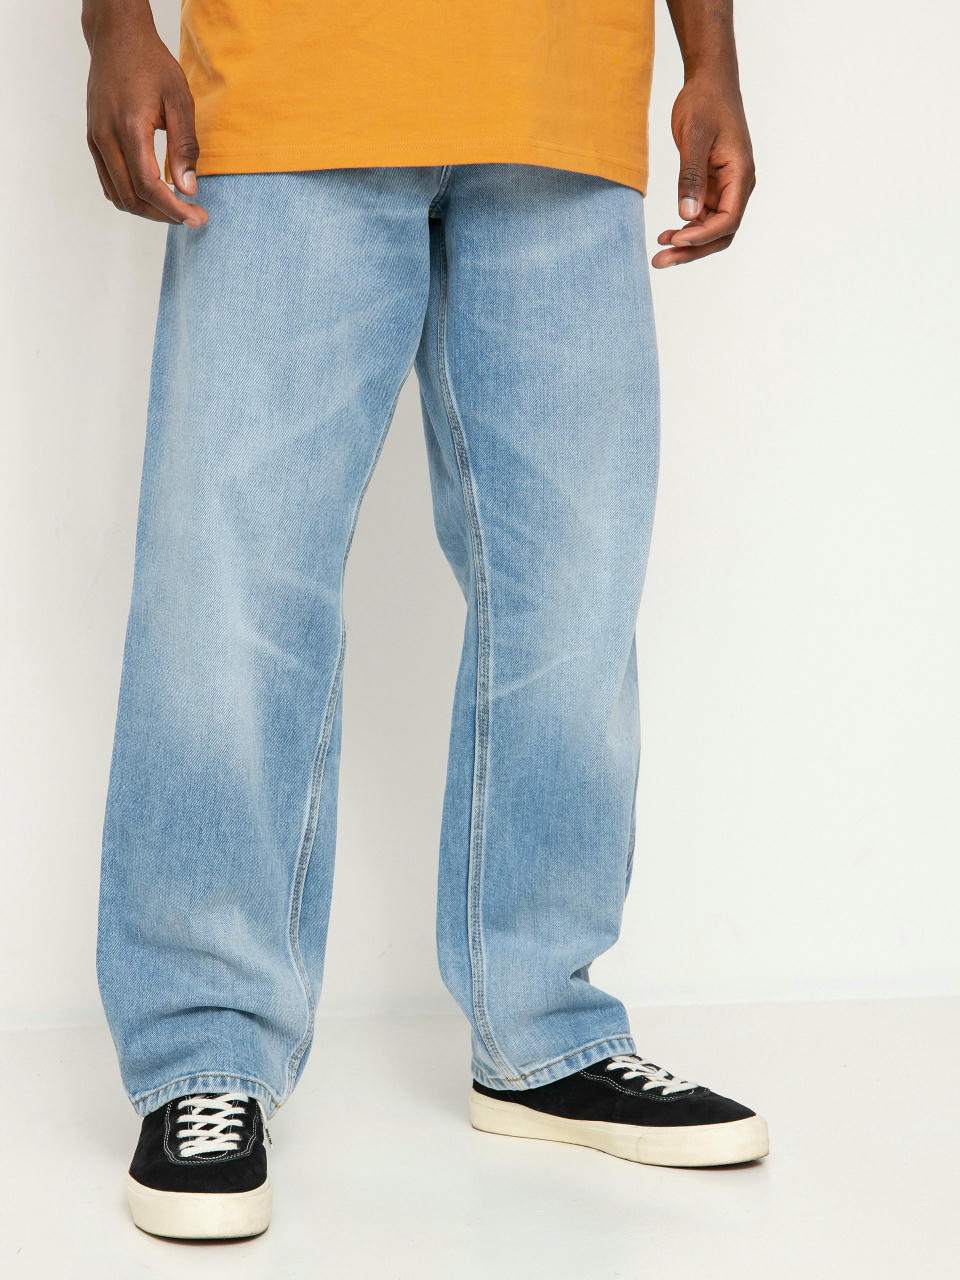 Carhartt WIP Single Knee Pants (blue)